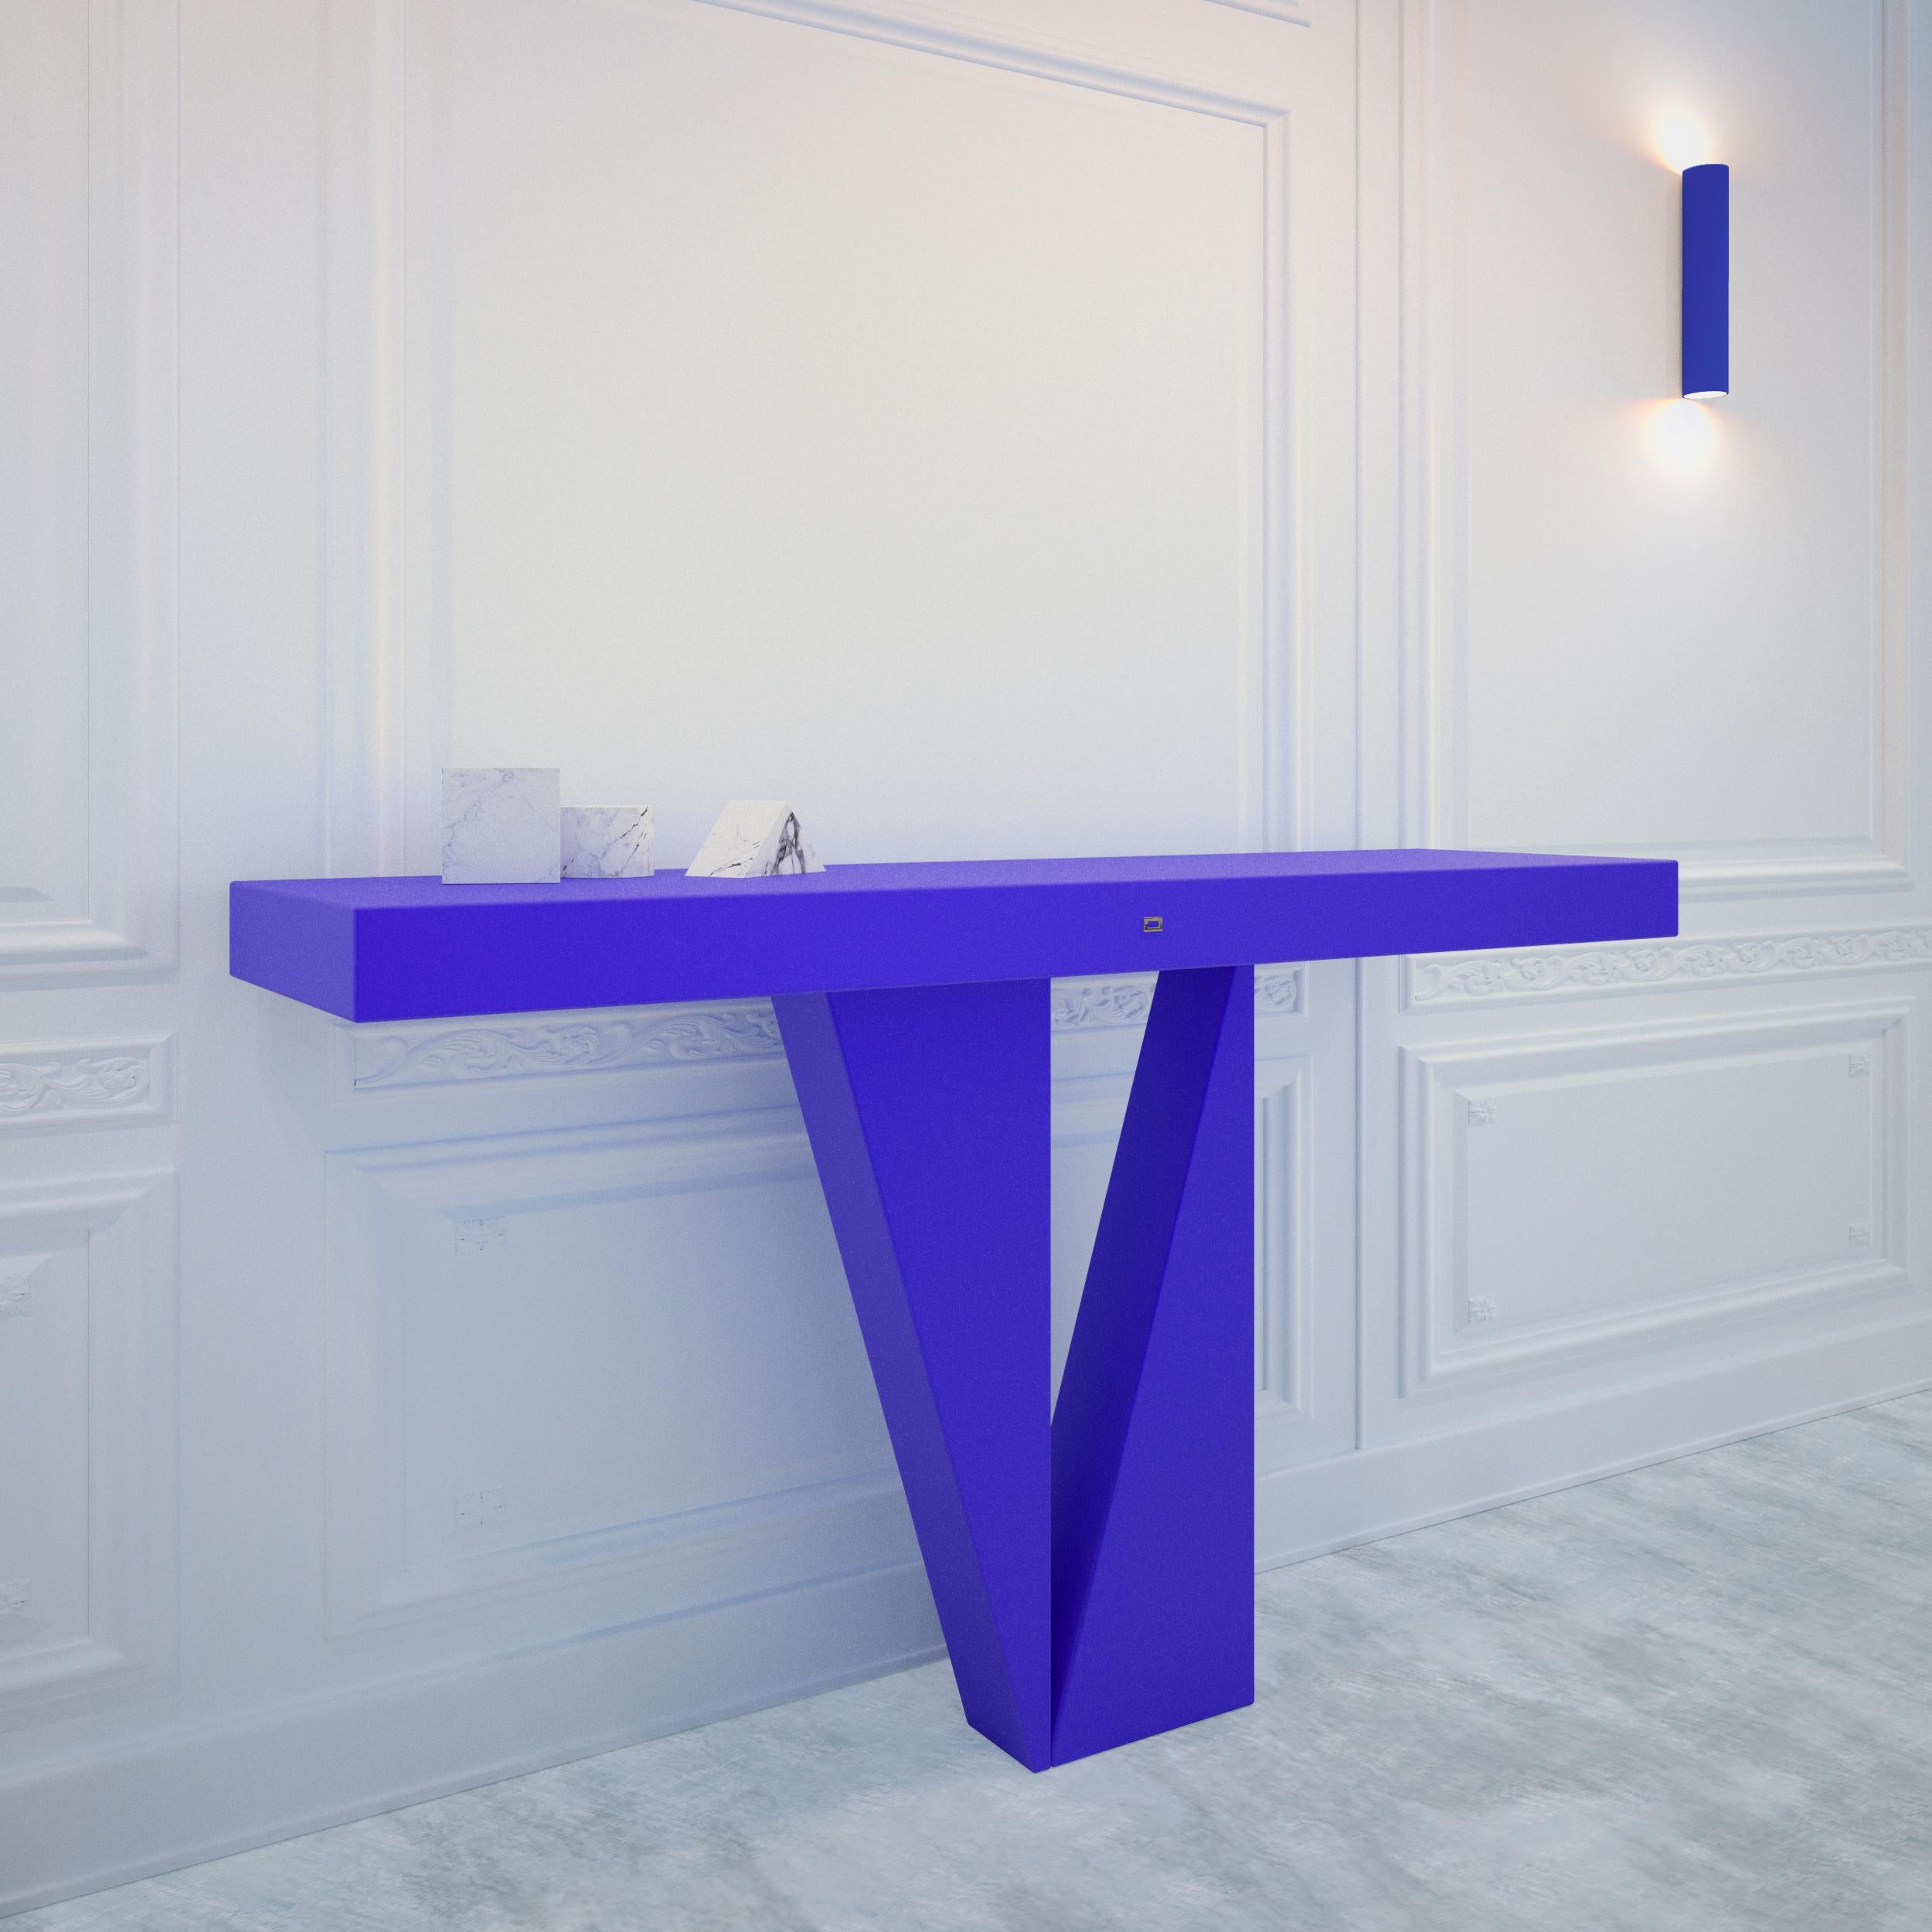 Table console / buffet
par Felix SCHWAKE
FS 52
CM L140 B35 H83
EN L55,12 B13,78 H32,68
Matériau - Bois
Surface - Laque bleue, mate
2023

Personnalisations sur demande.

Sculpture d'art fonctionnelle.
Une pièce unique en son genre.
Fabriqué sur